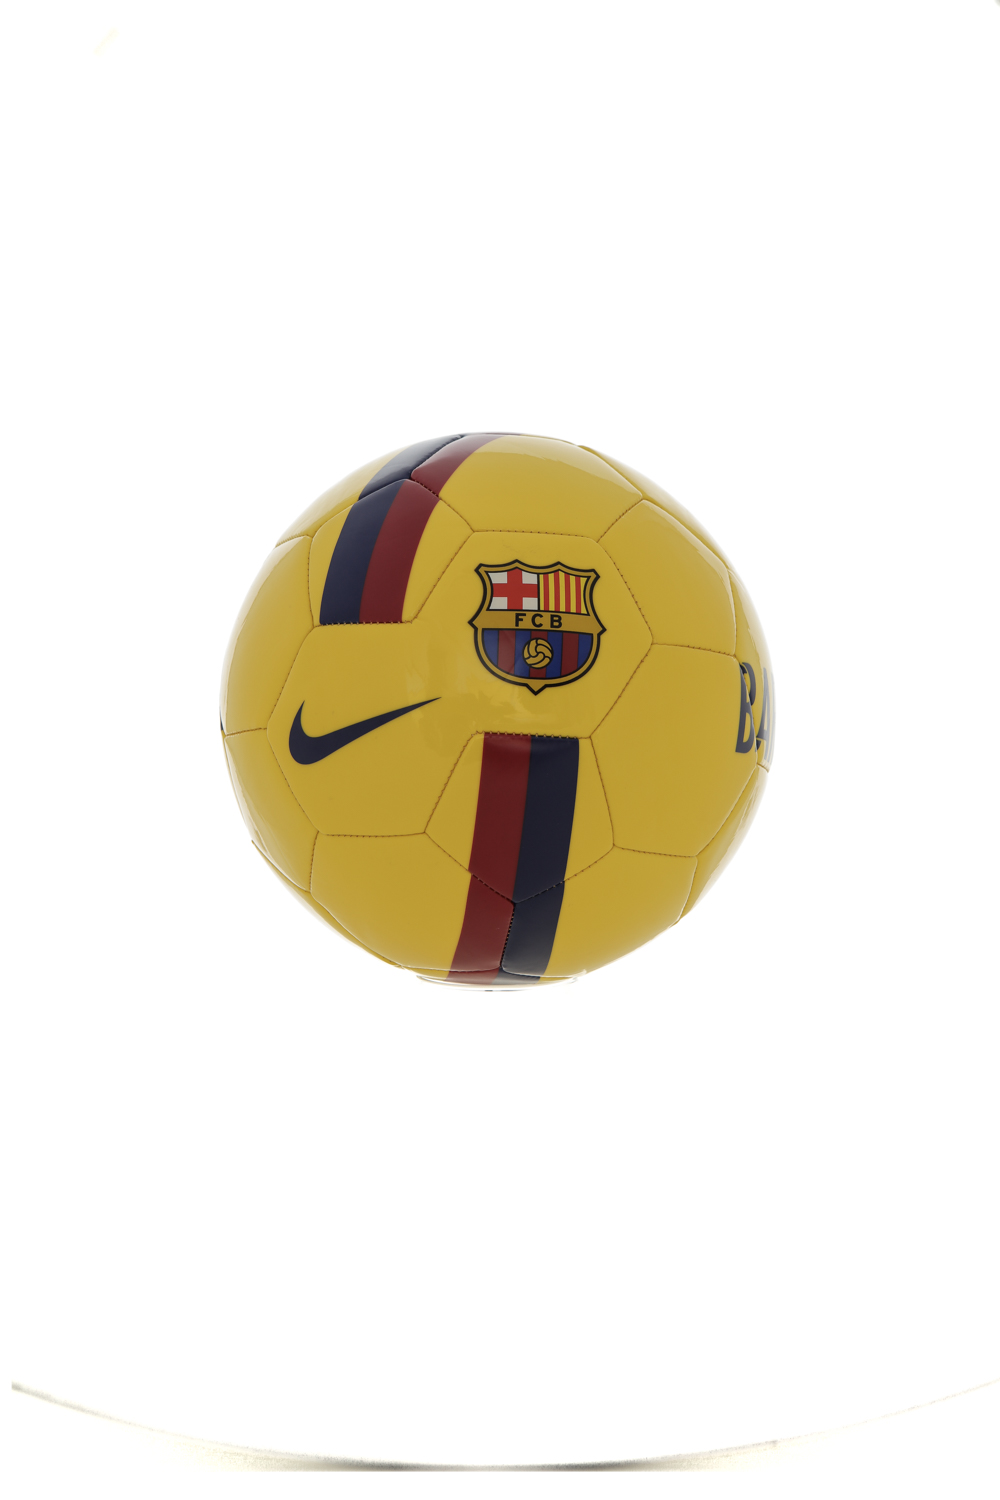 Ανδρικά/Αξεσουάρ/Αθλητικά Είδη/Μπάλες NIKE - Unisex μπάλα ποδοσφαίρου FCB NIKE κίτρινη